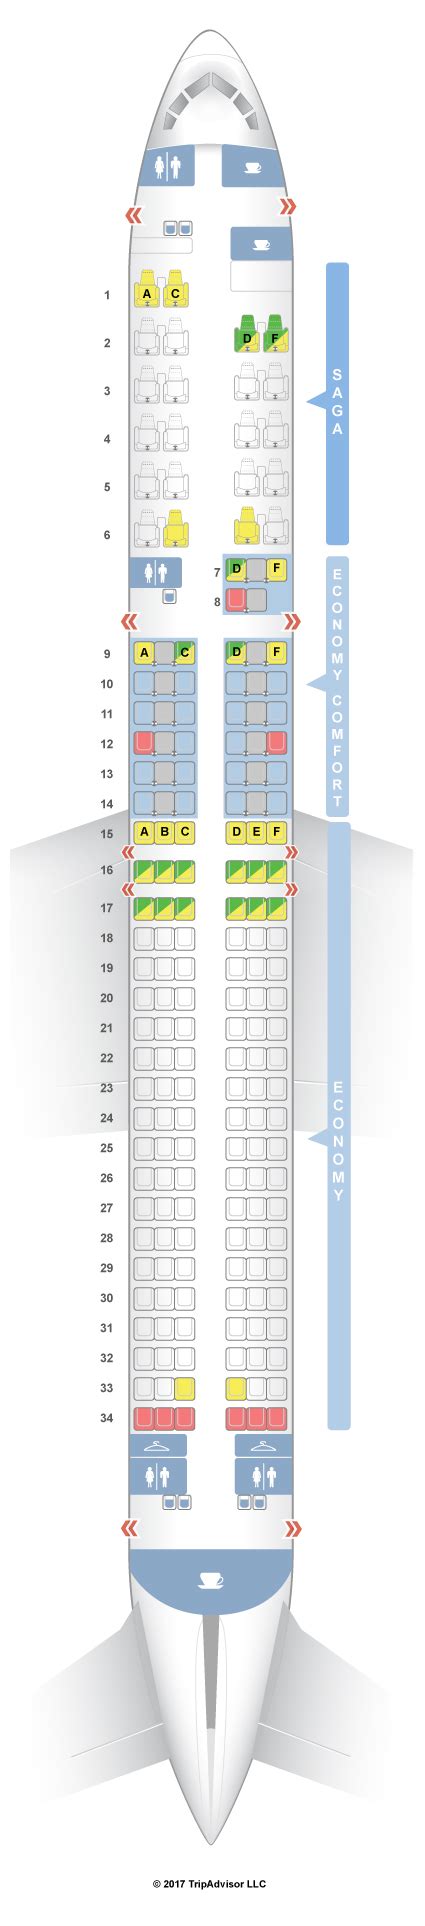 Icelandair boeing 757 200 seat map. Icelandair Boeing 757 200 Seat Map; Seat 7e; Icelandair Reviews. Seating Charts · Boeing 737 MAX 8 · Boeing 737 MAX 9 Boeing 757-200 · Boeing 757-200 (v2 ... 